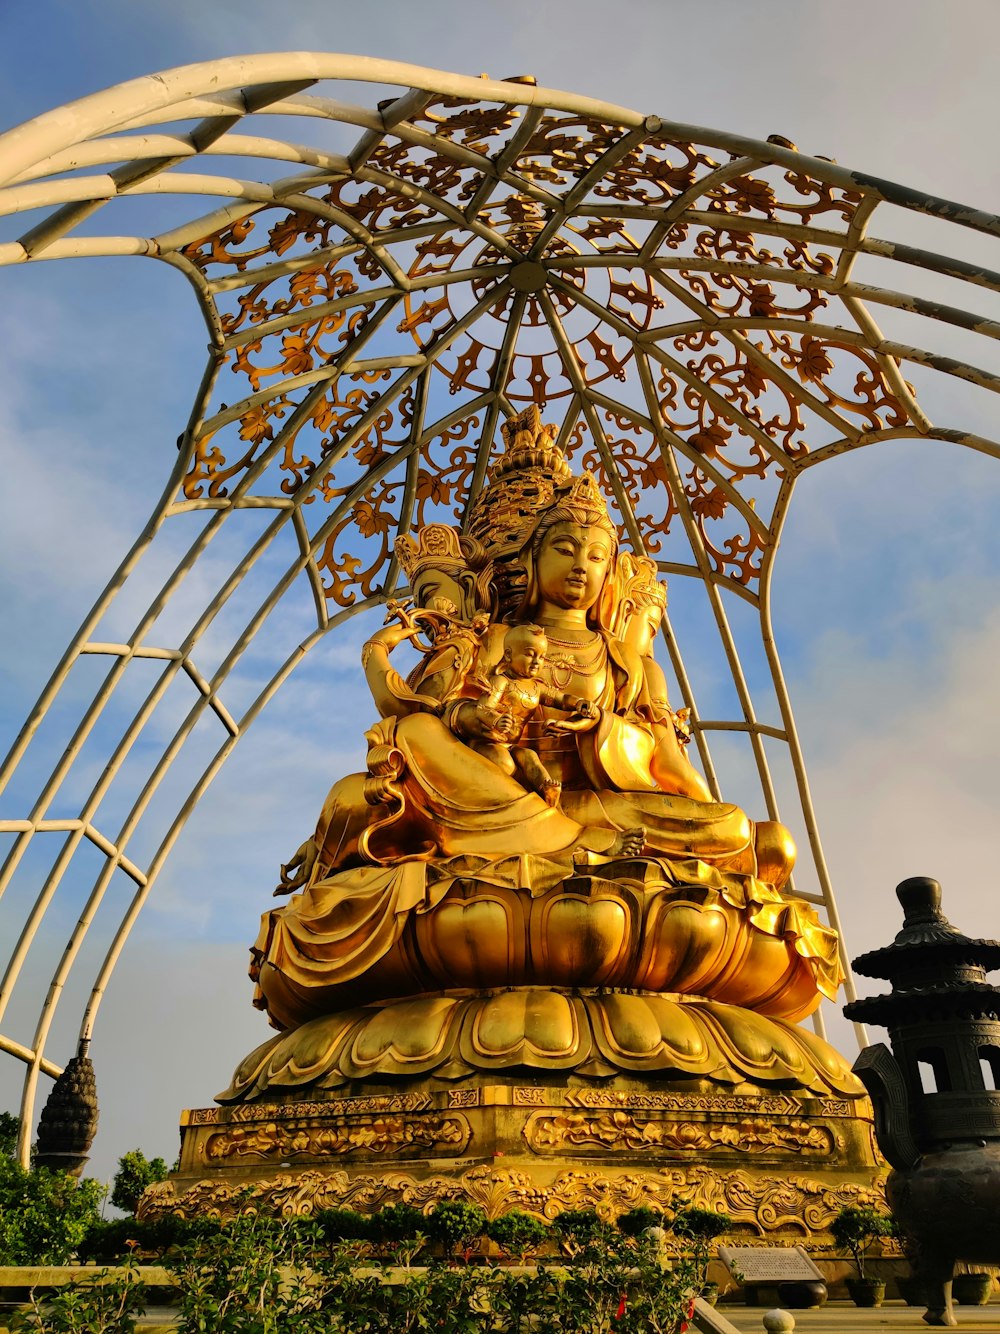 Una estatua dorada de Buda sentada bajo una estructura metálica